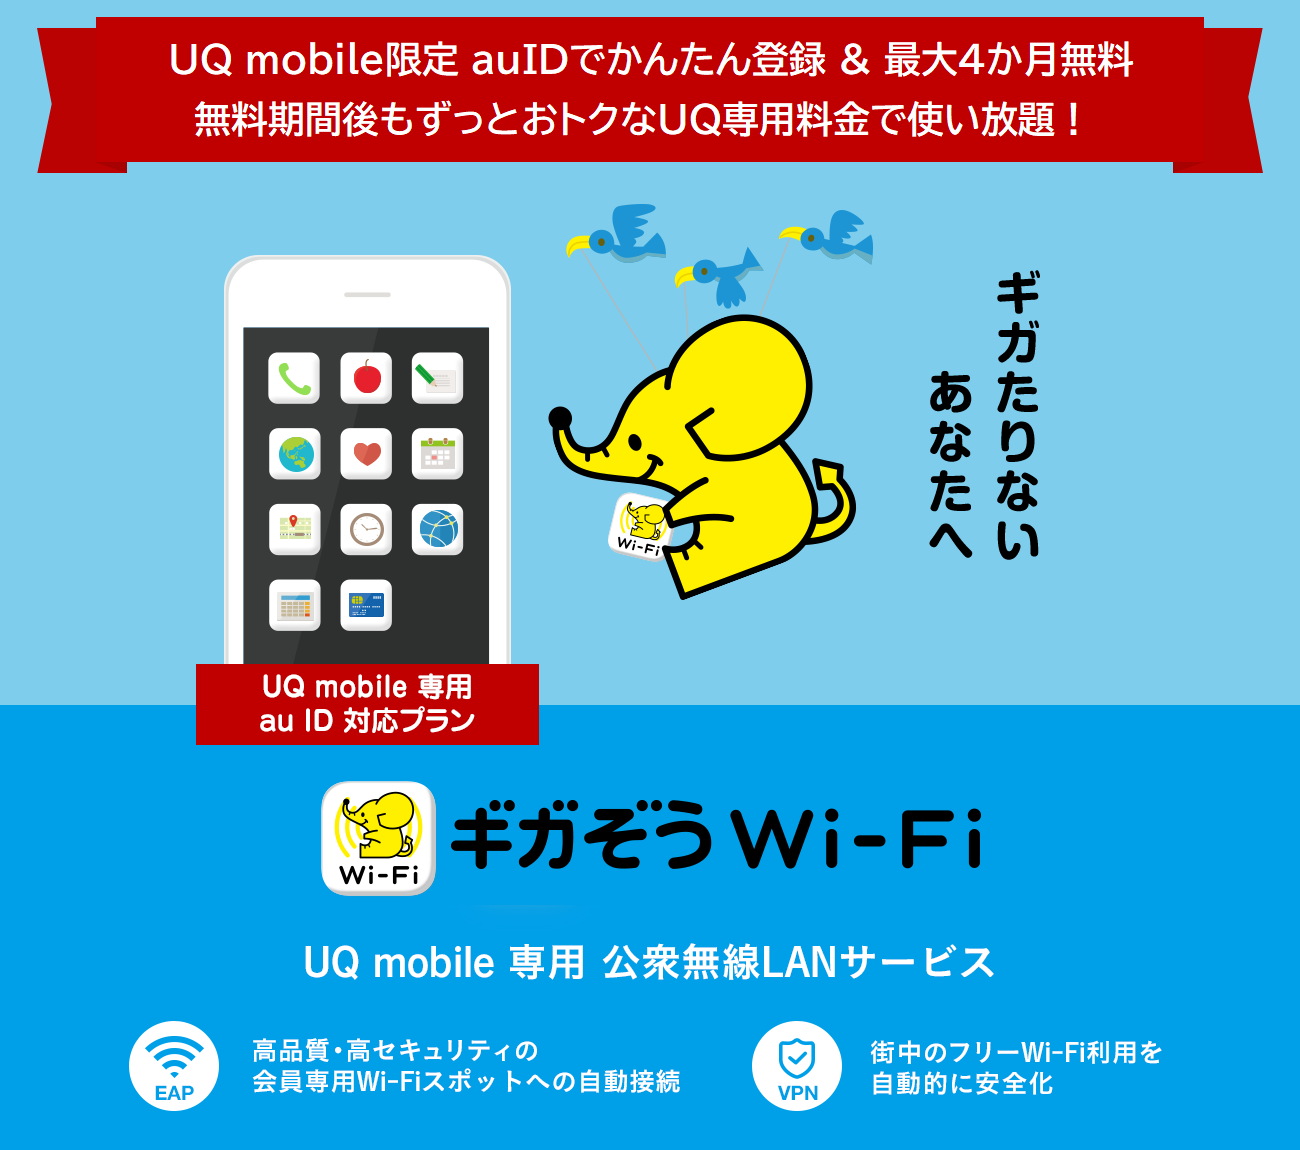 ギガぞう for UQ mobile